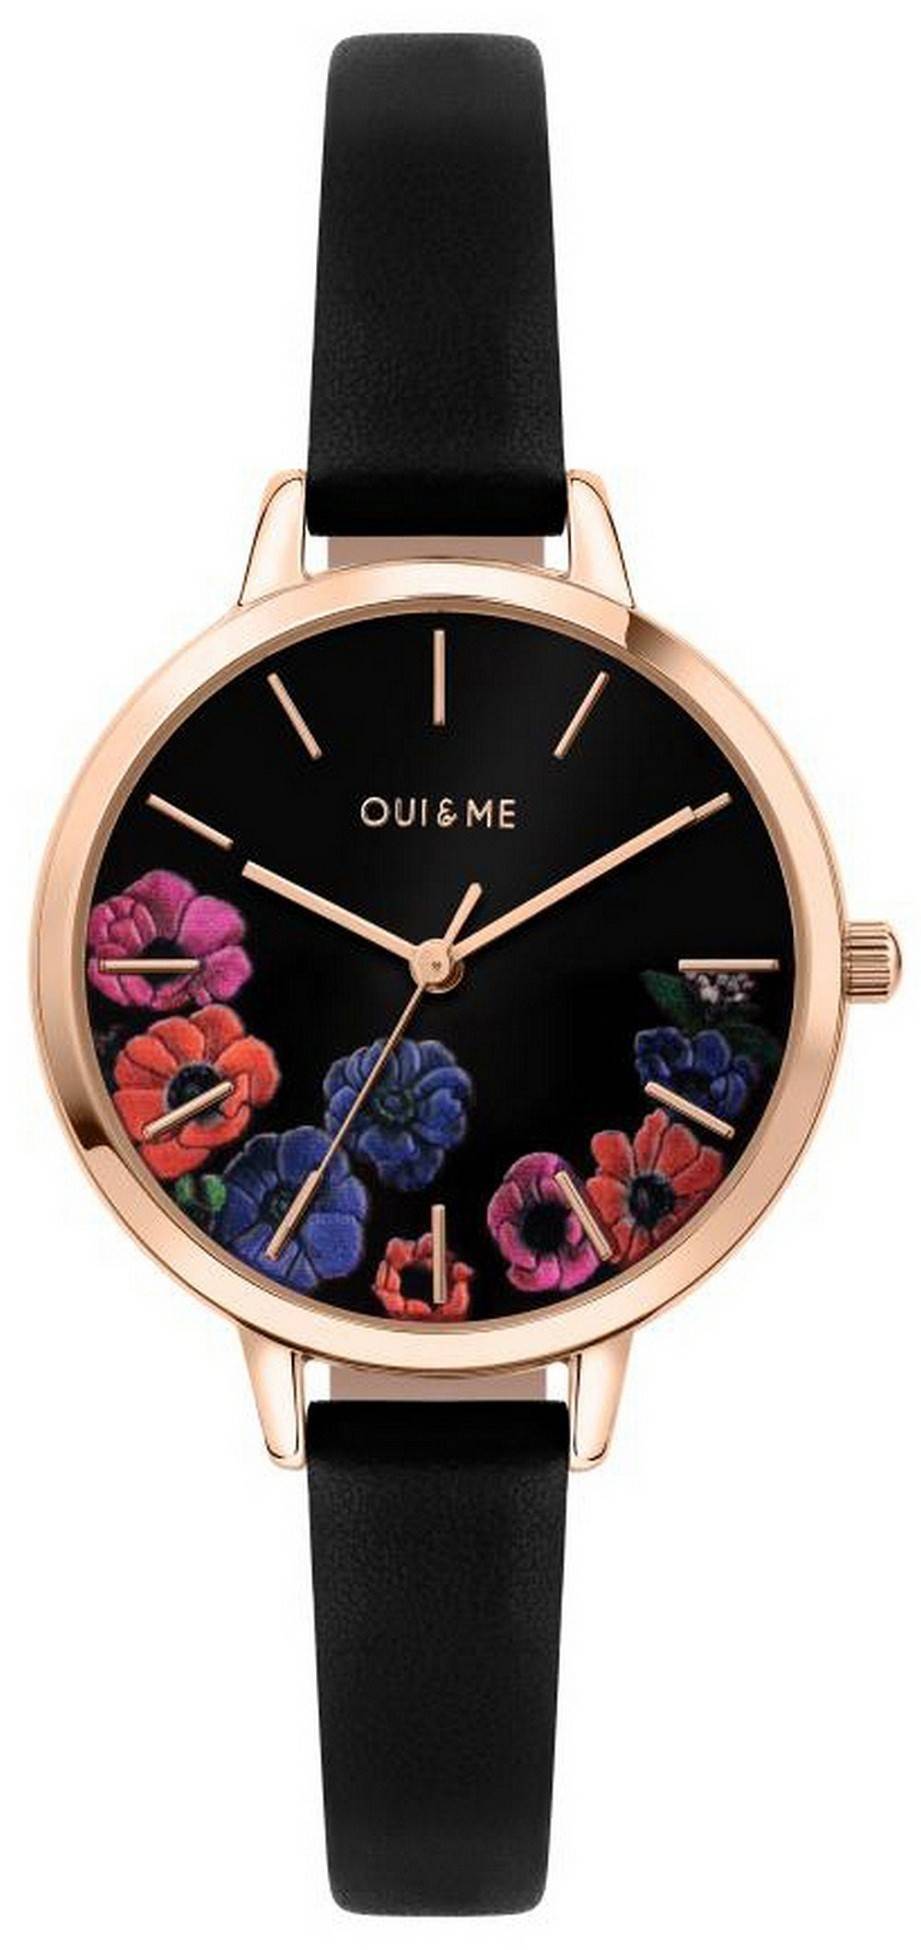 Oui & Me Petite Fleurette Black Dial Leather Strap Quartz ME010059 Women's Watch